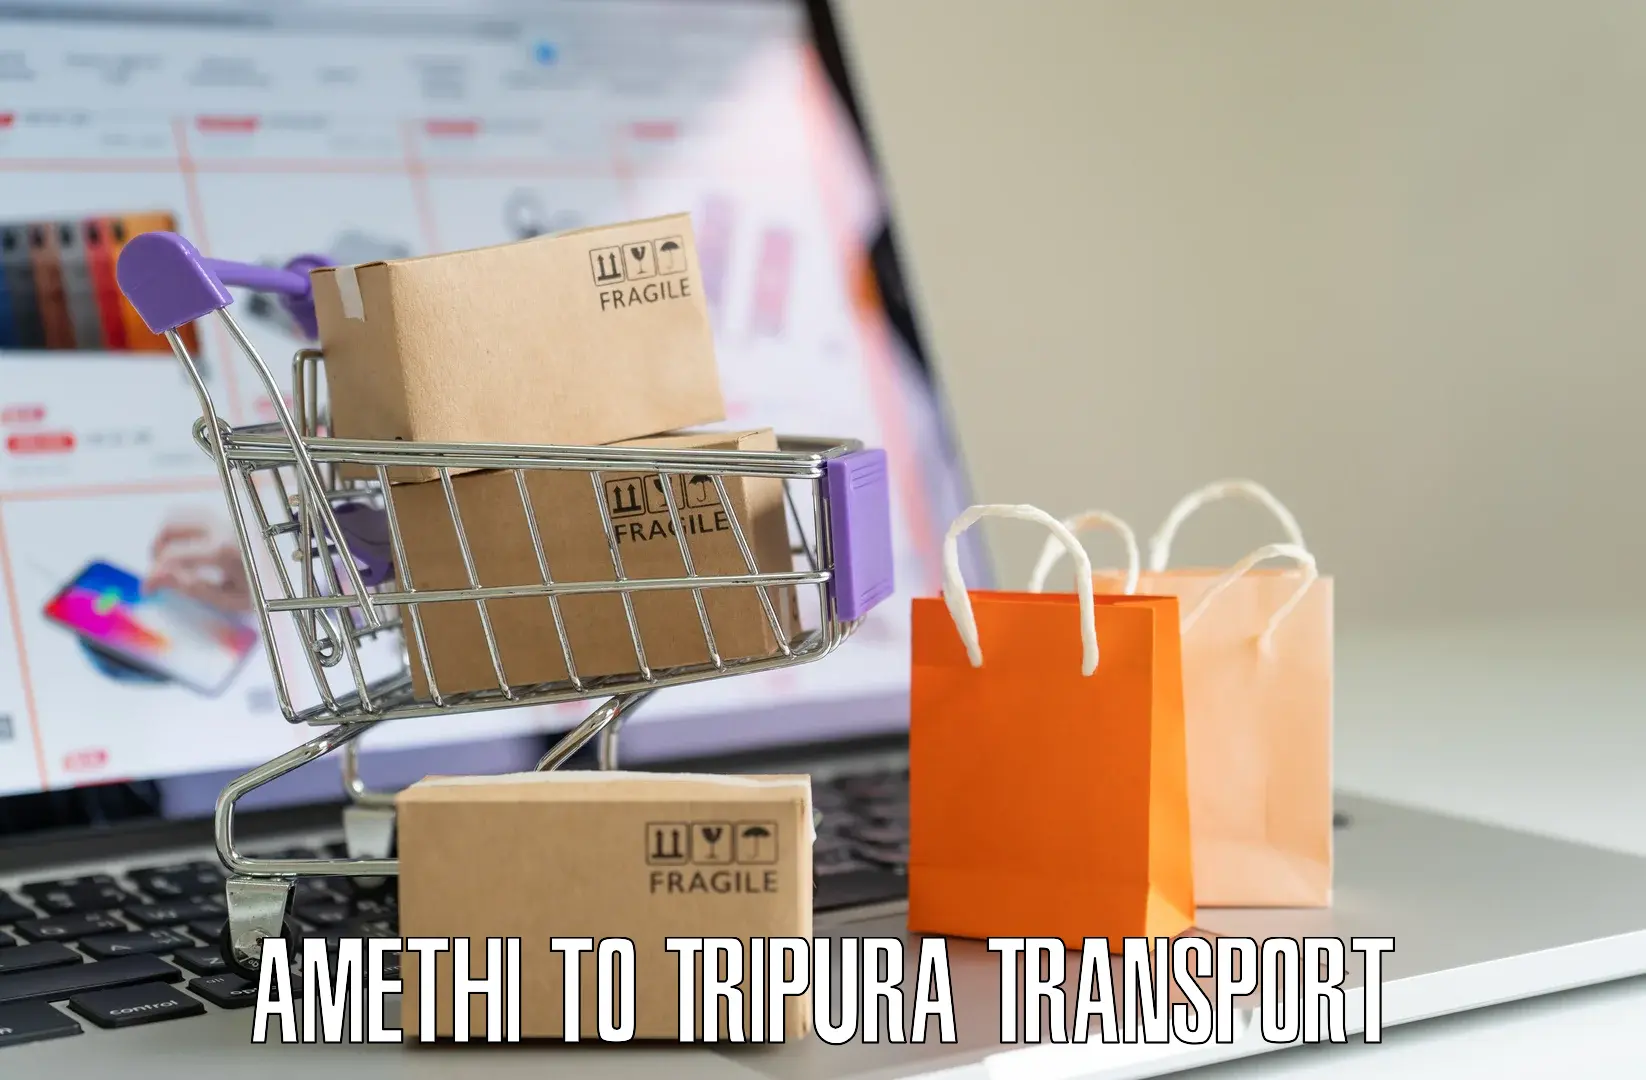 Online transport service Amethi to Radhakishorepur